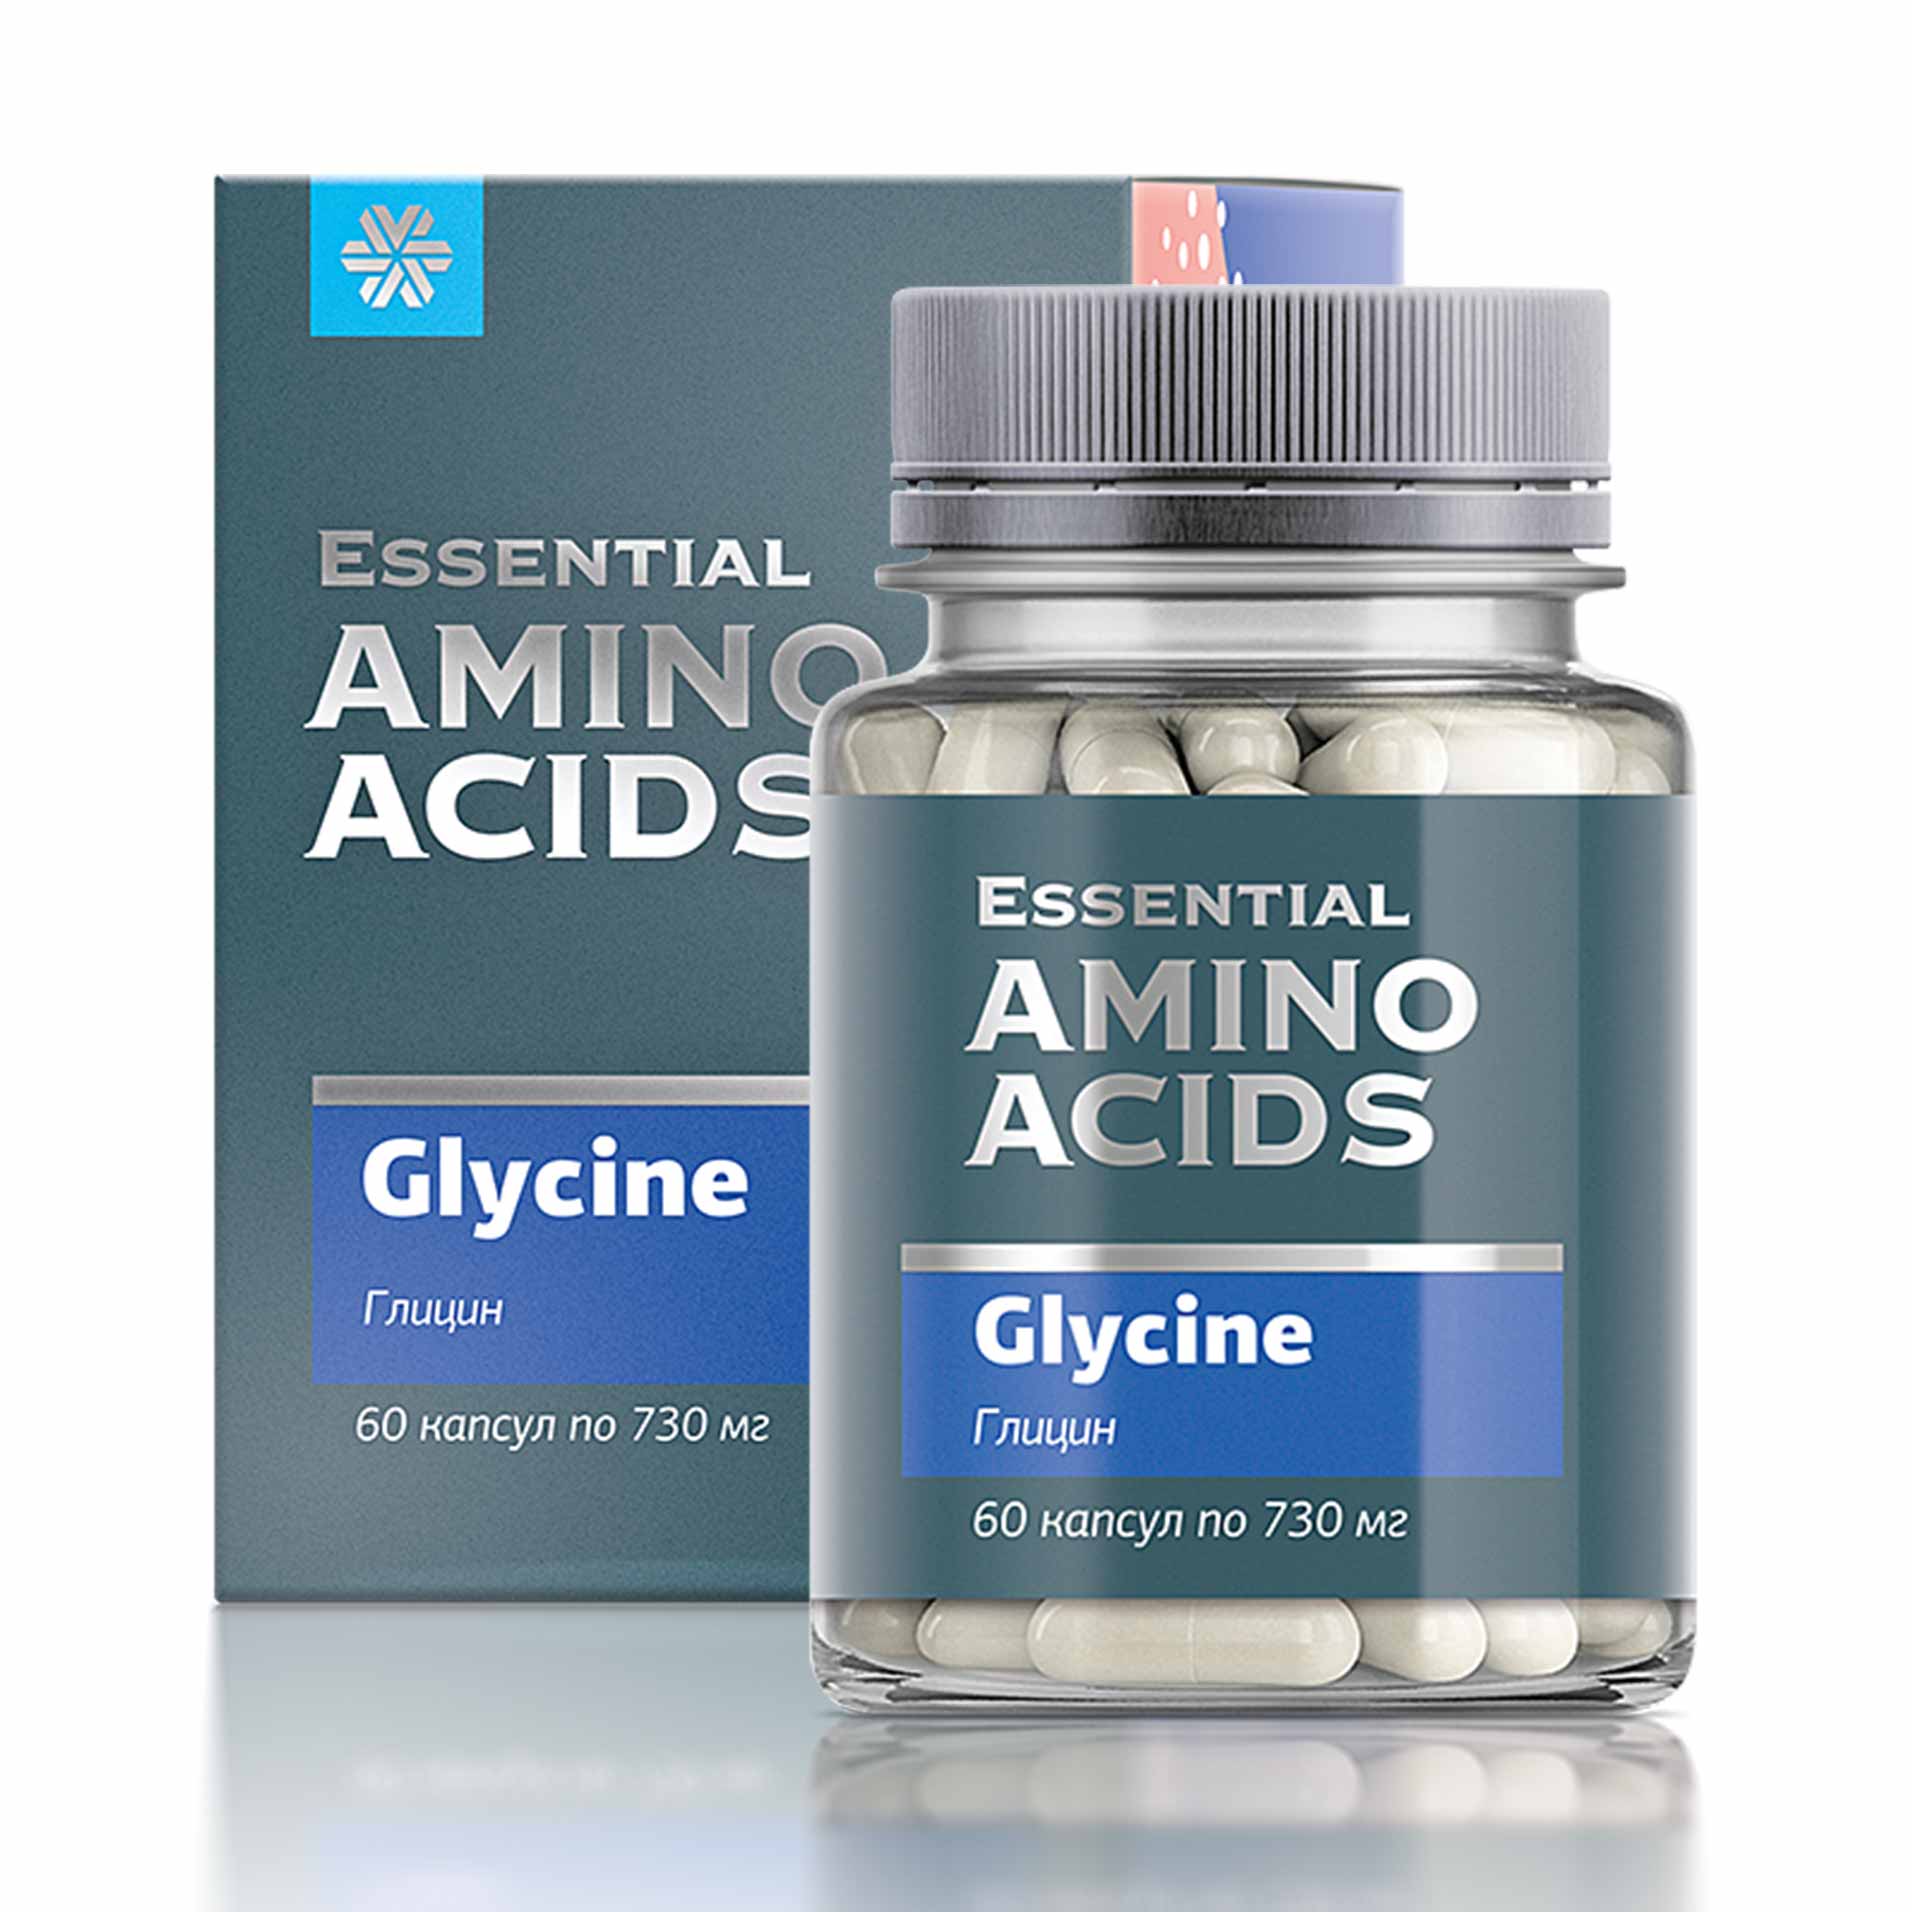 Изображение отсутствует.
			Купить Глицин - Essential Amino Acids //  // 